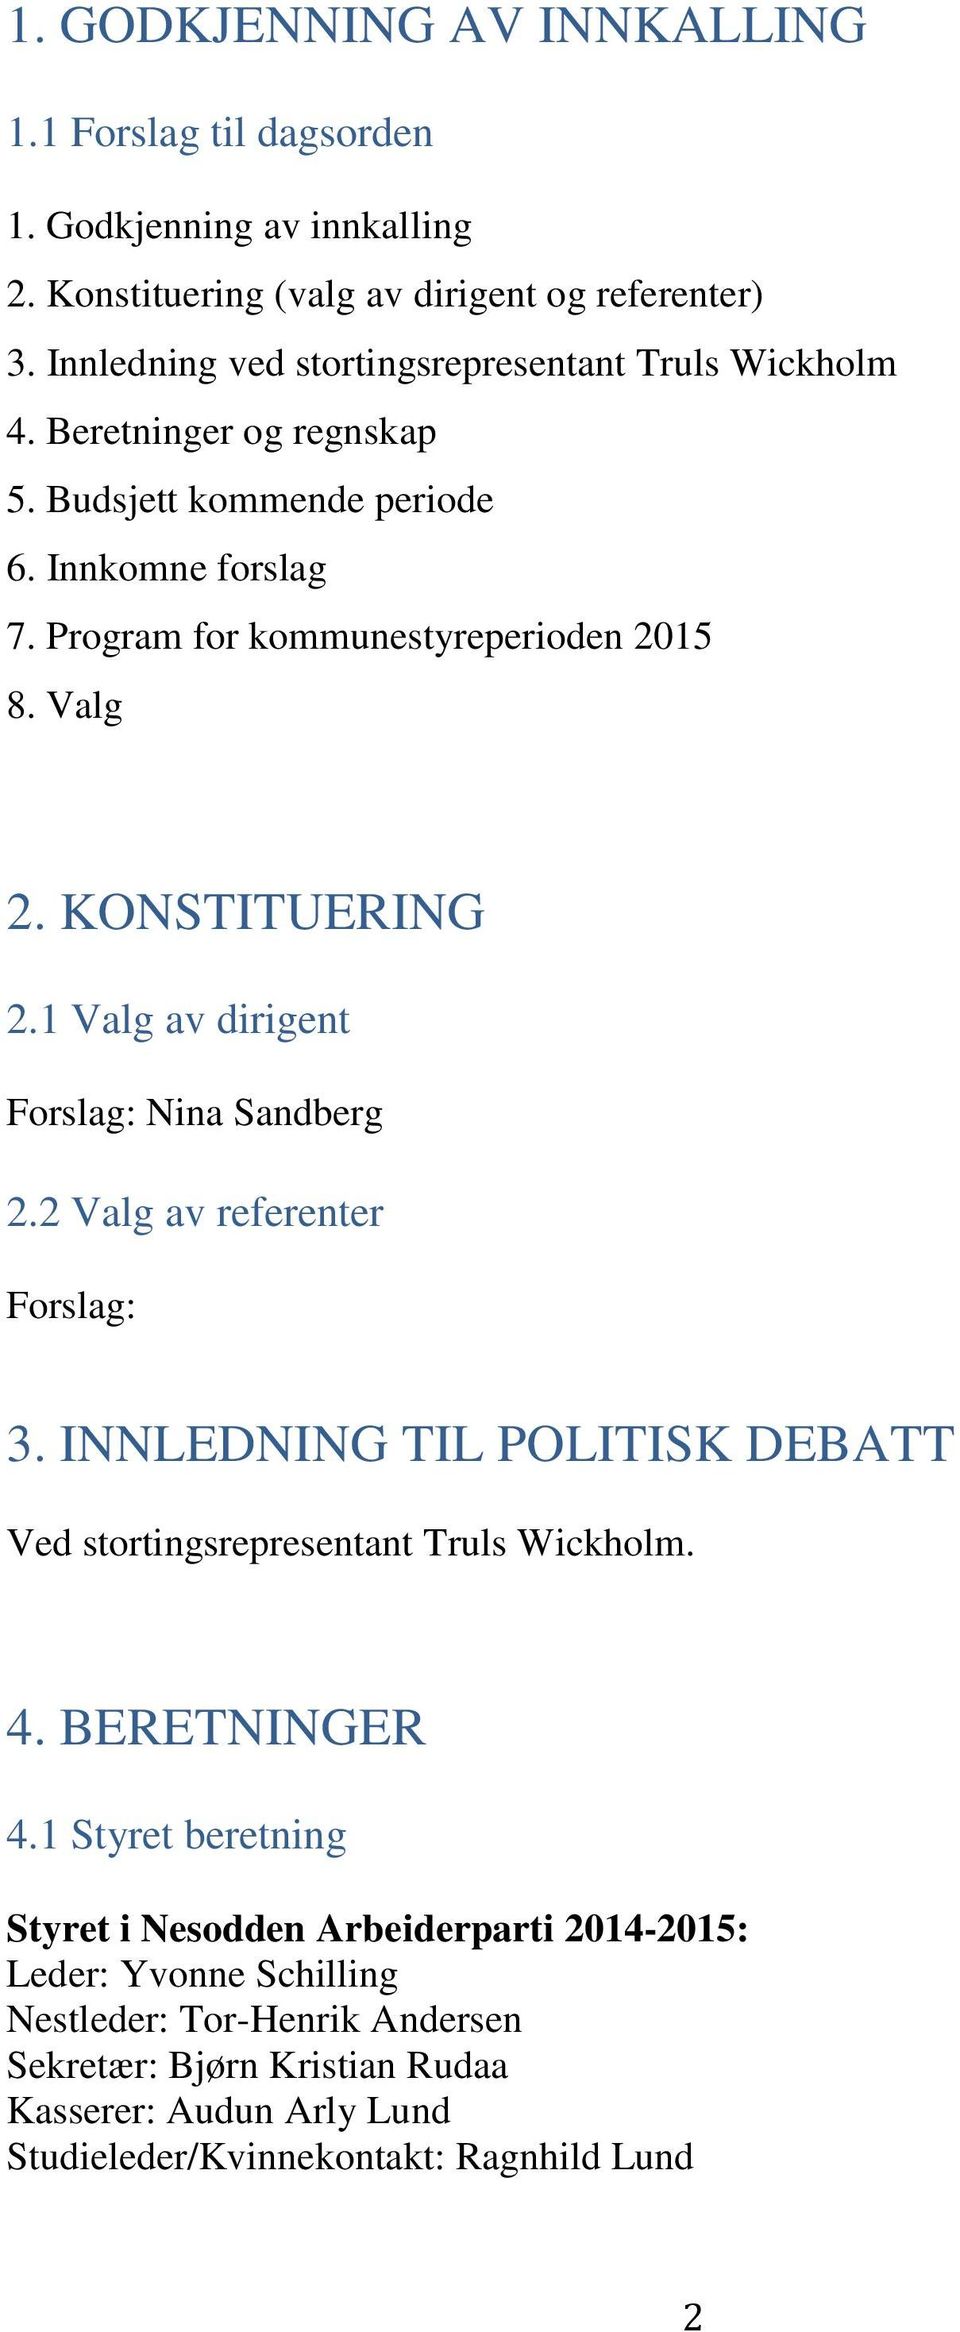 KONSTITUERING 2.1 Valg av dirigent Forslag: Nina Sandberg 2.2 Valg av referenter Forslag: 3. INNLEDNING TIL POLITISK DEBATT Ved stortingsrepresentant Truls Wickholm. 4.